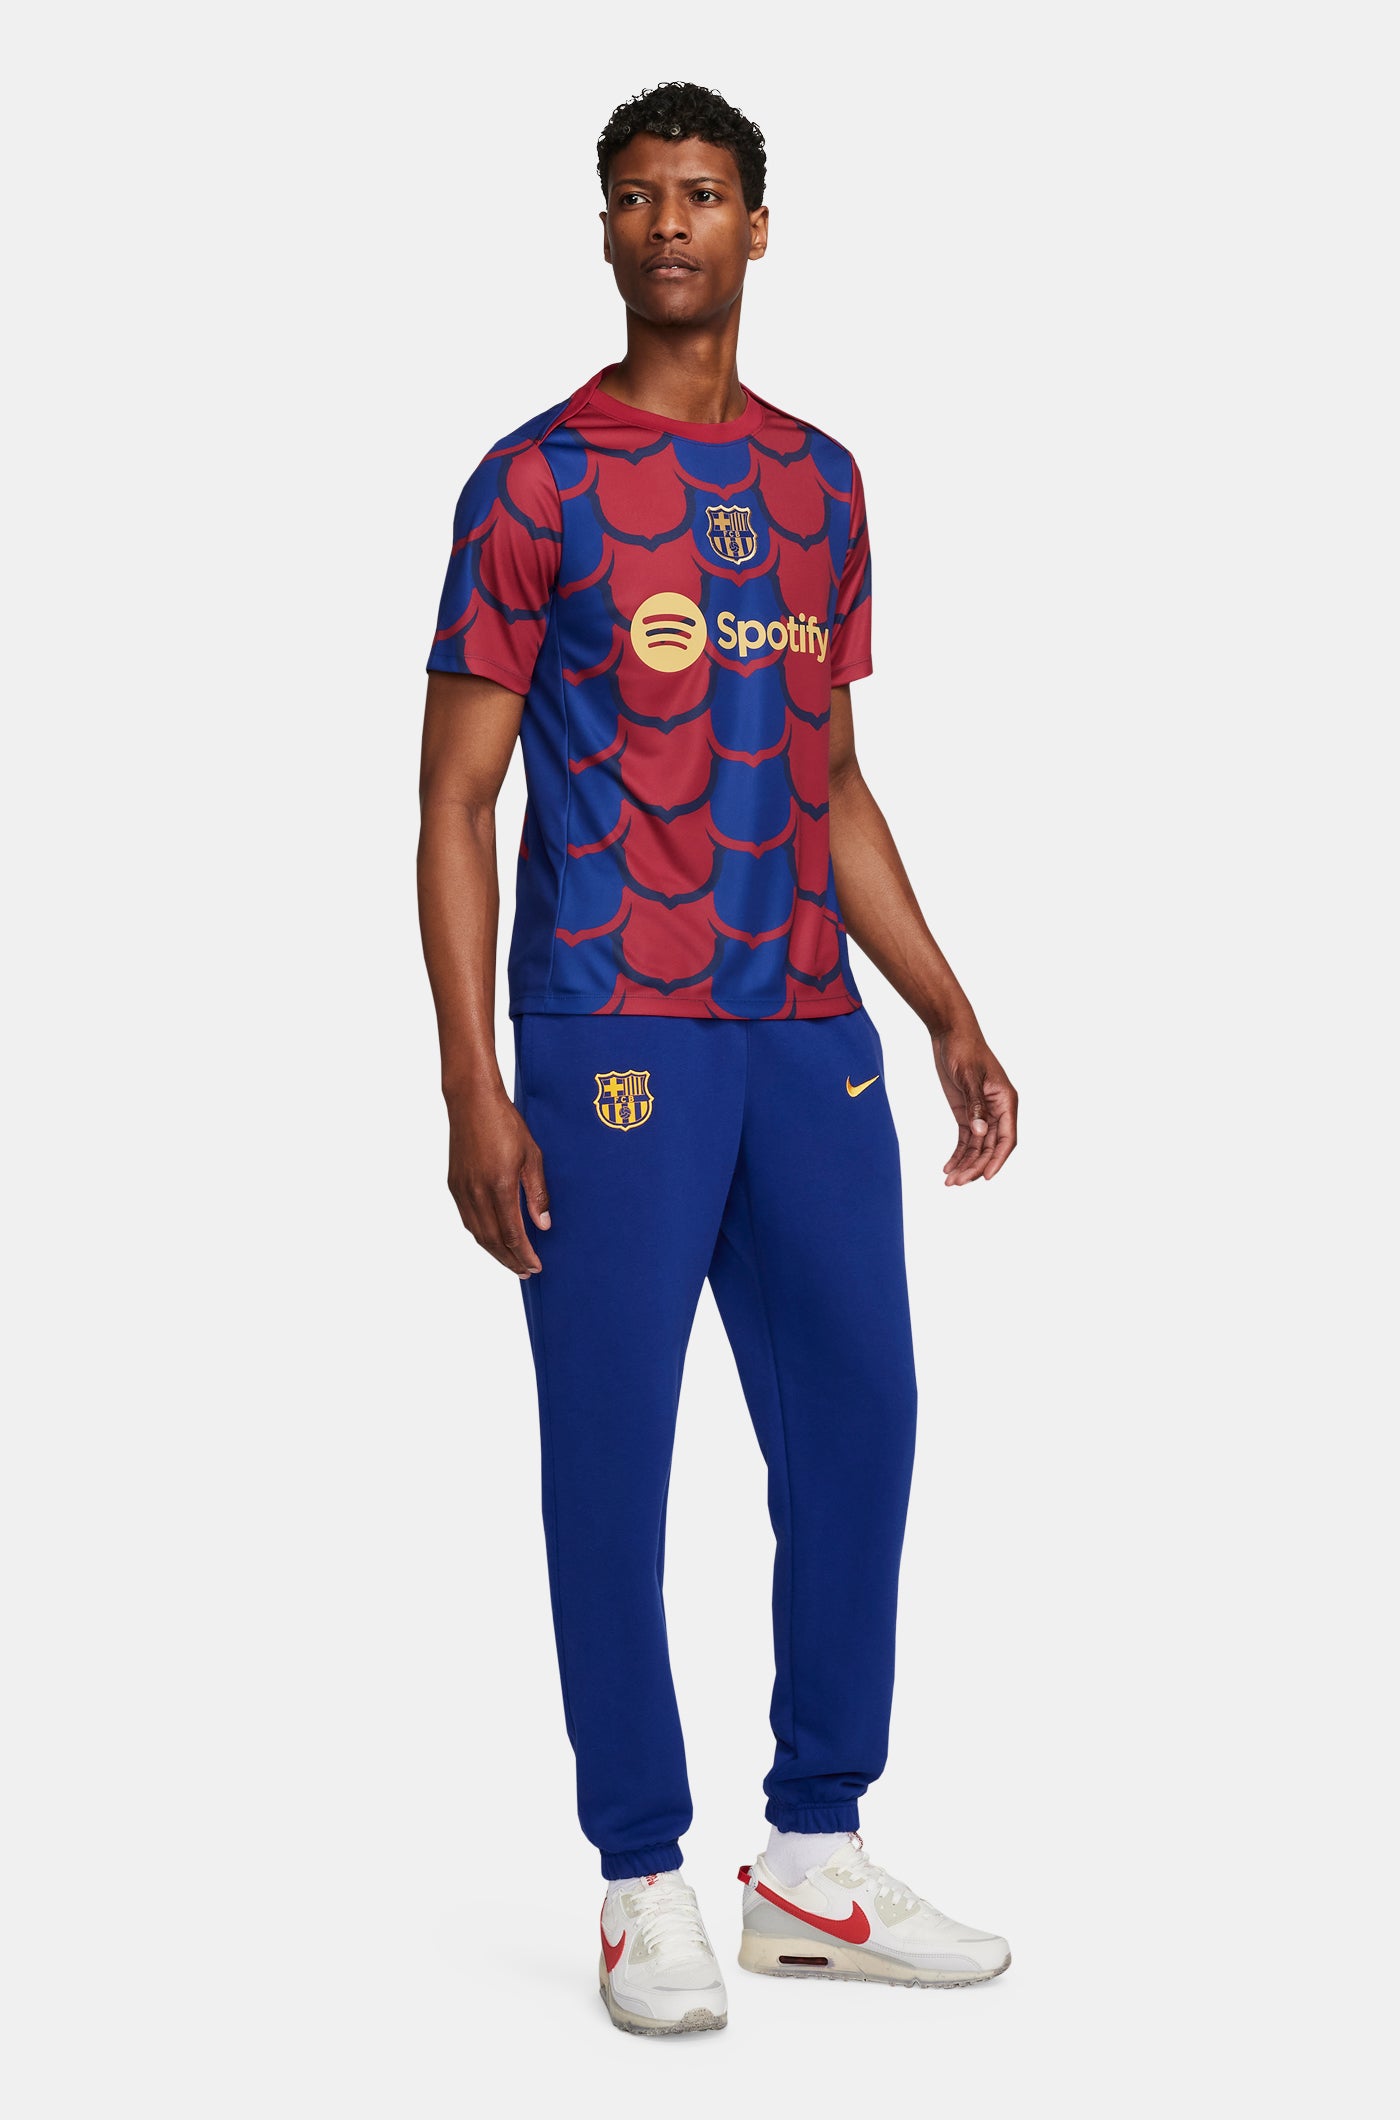 Kits – Barça Official Store Spotify Camp Nou